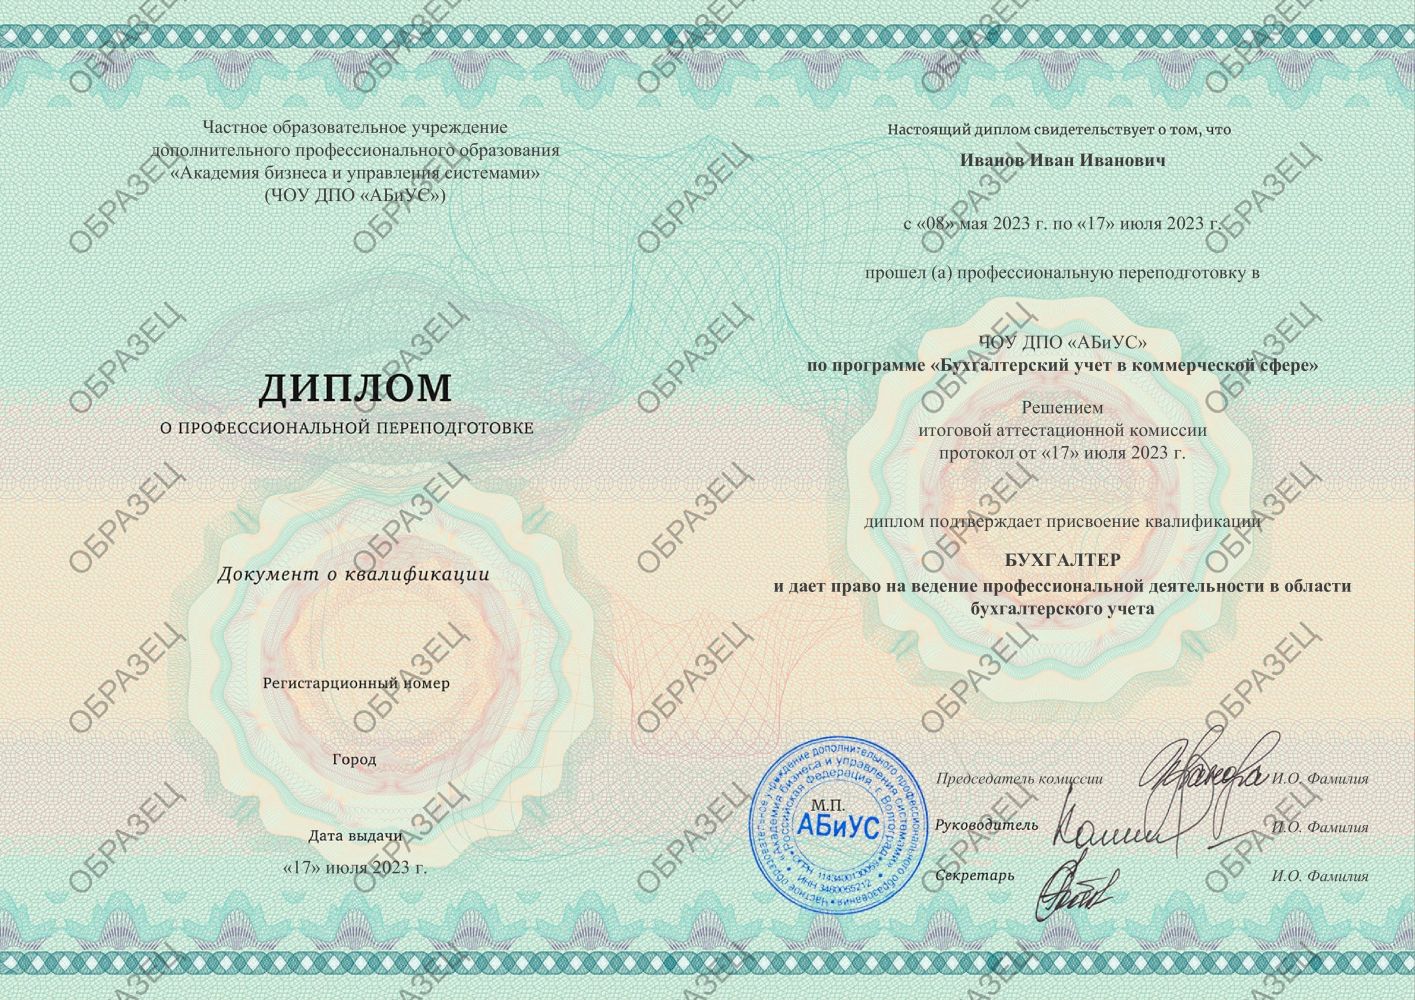 Диплом Бухгалтерский учет в коммерческой сфере 260 часов 13688 руб.